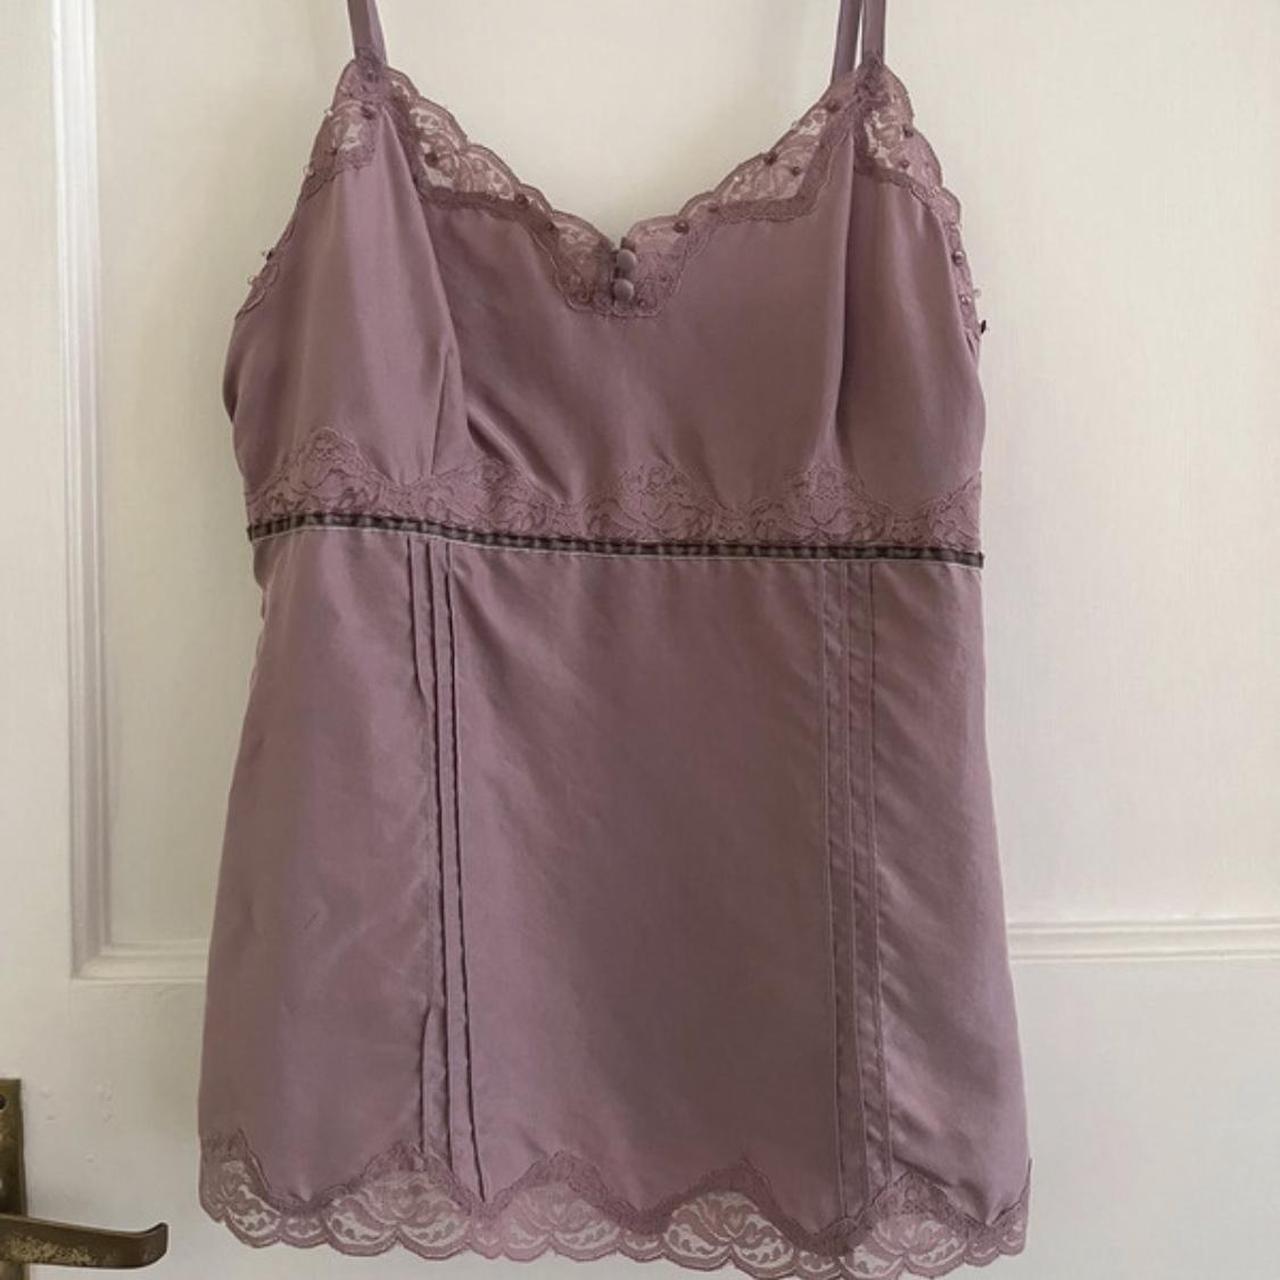 wallis purple lilac cami top satin type fabric, has... - Depop